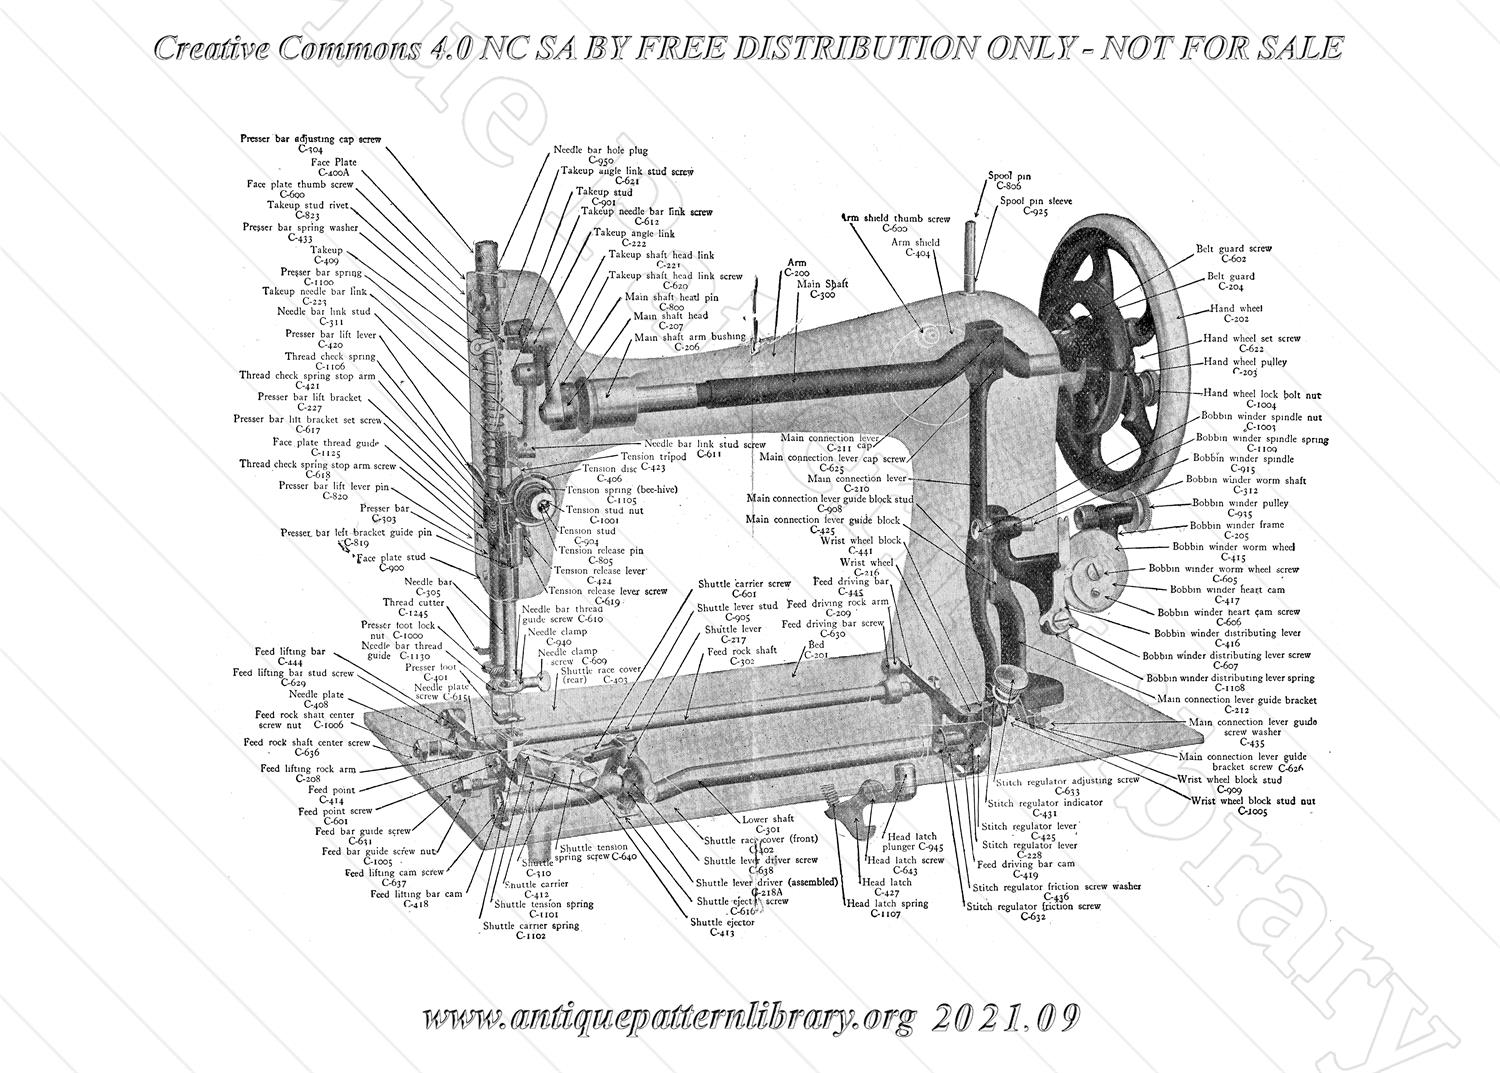 L-VS001 Bruce Sewing Machine Manual